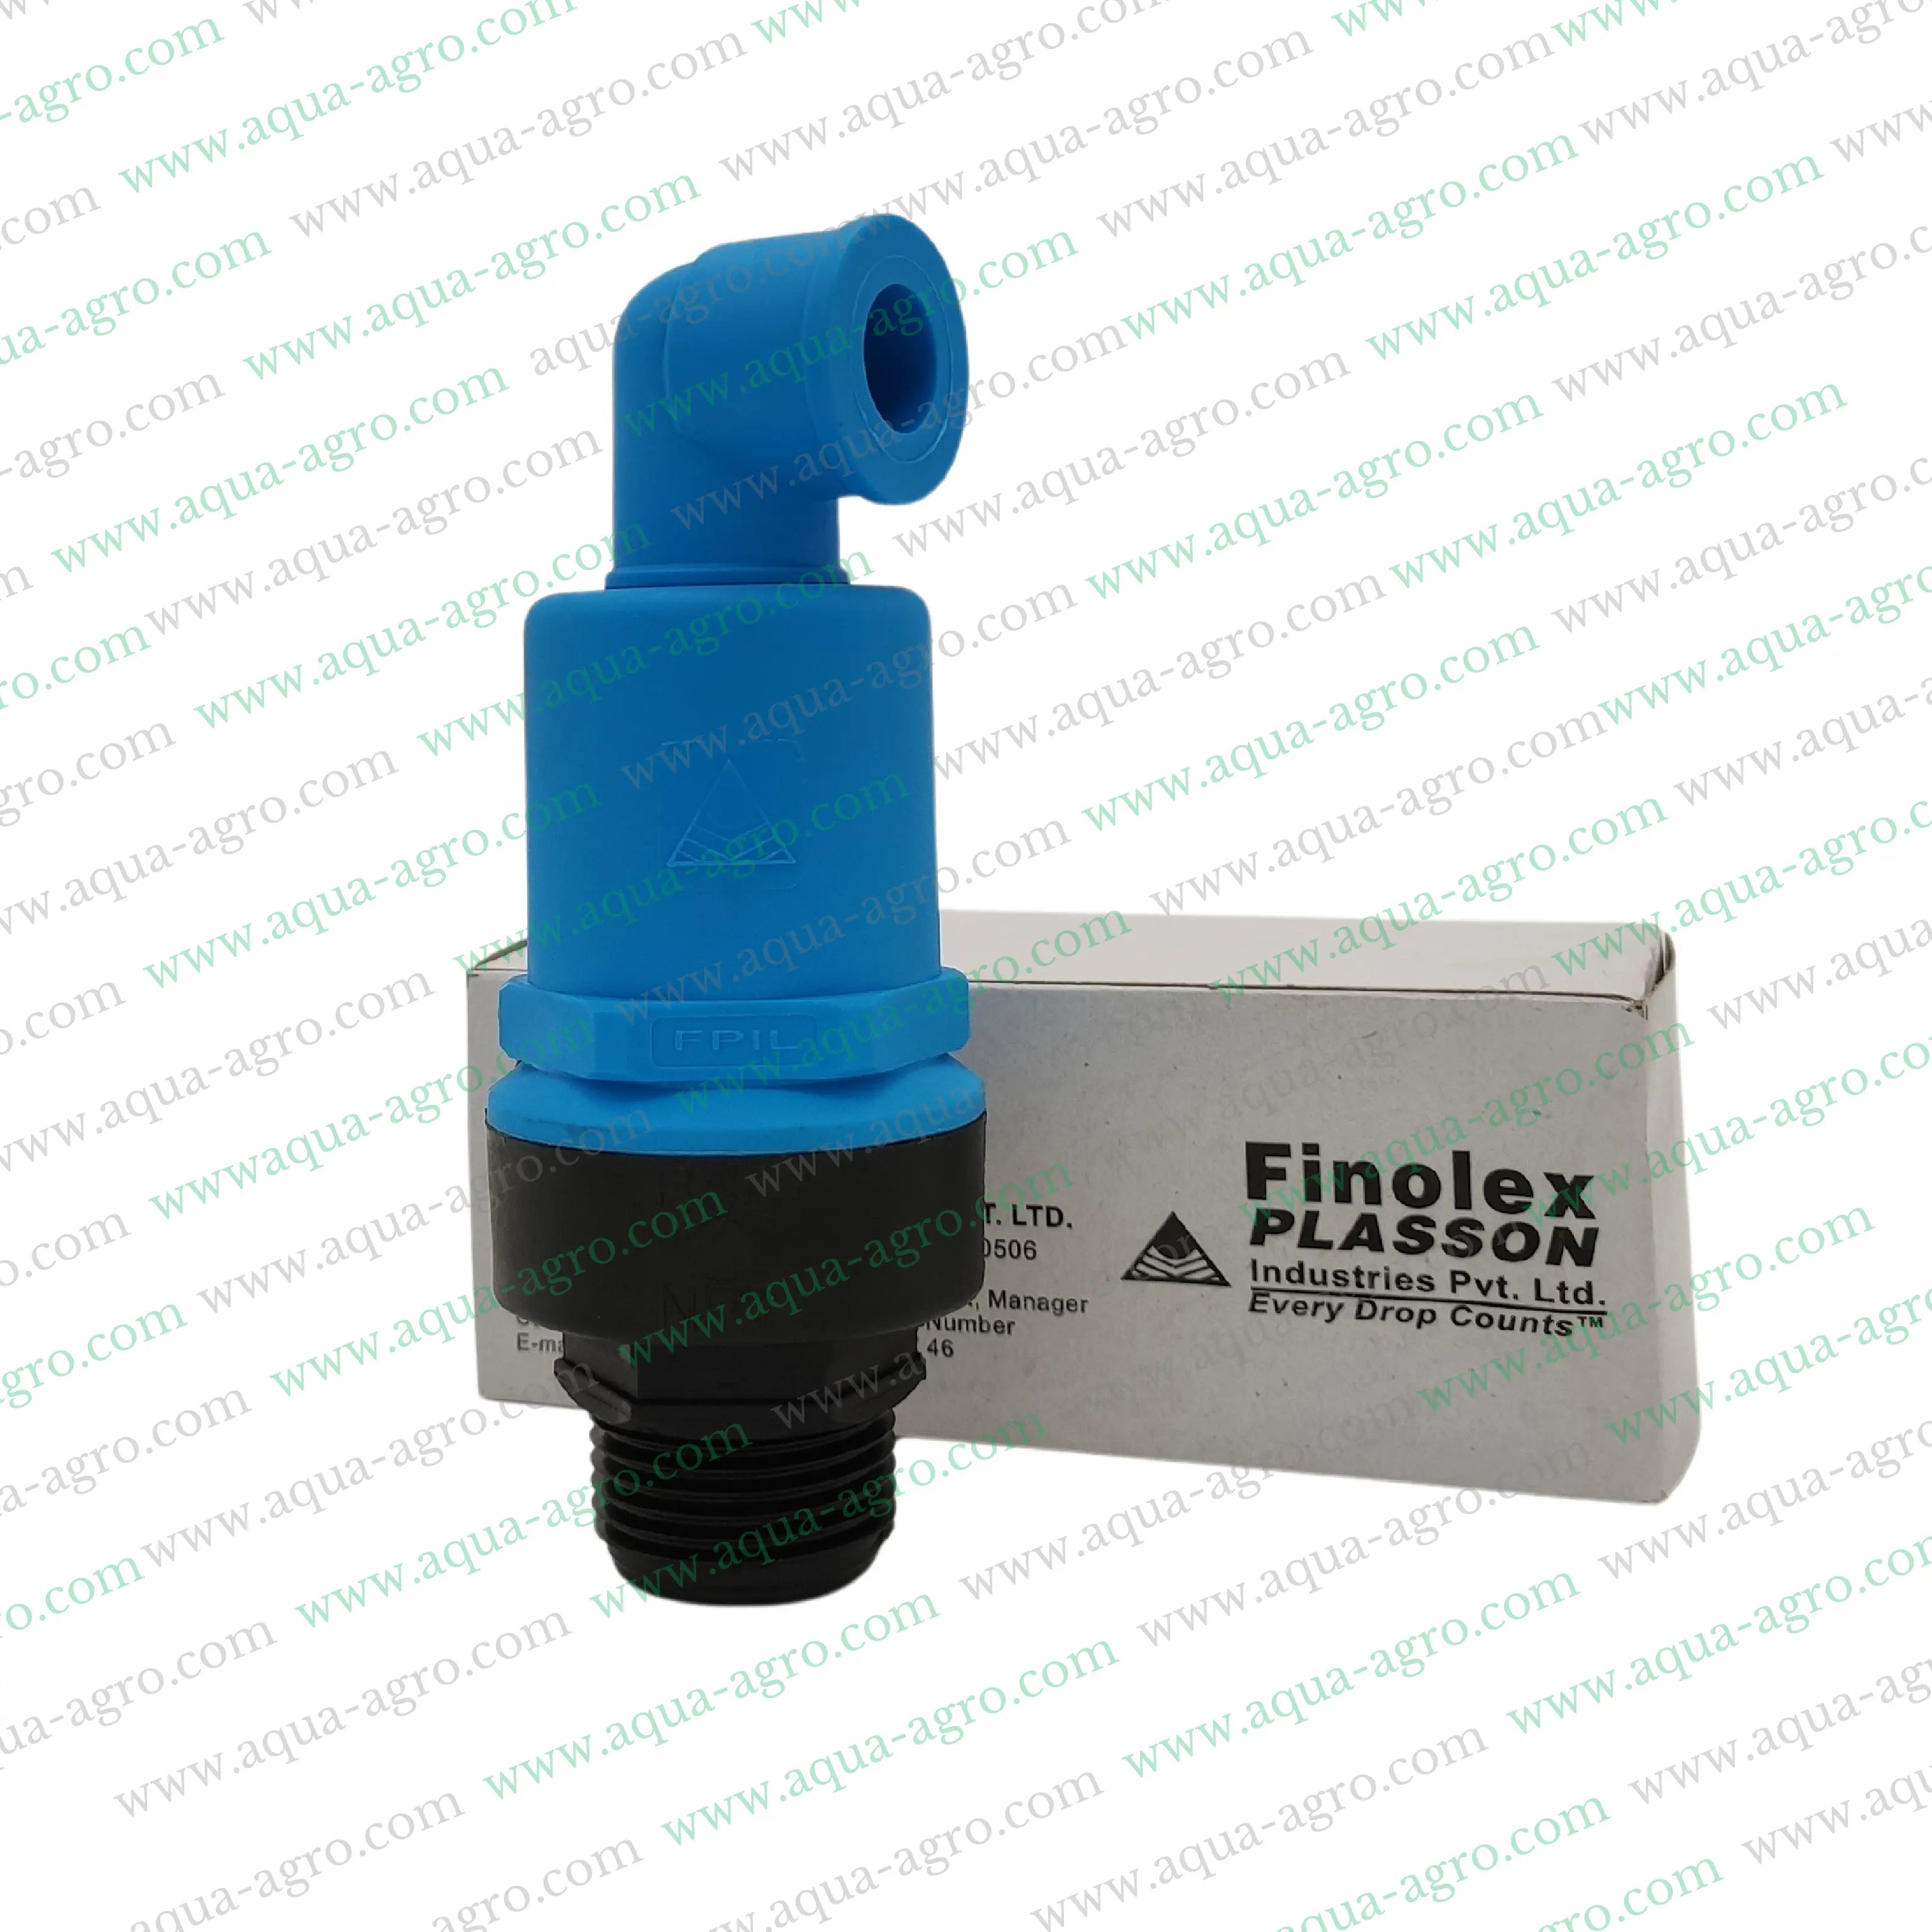 FINOLEX PLASSON | Air Release Valve - Plastic - Regular - Air - cum - Vaccum Relief - 1" (32mm)  [M-Thd]